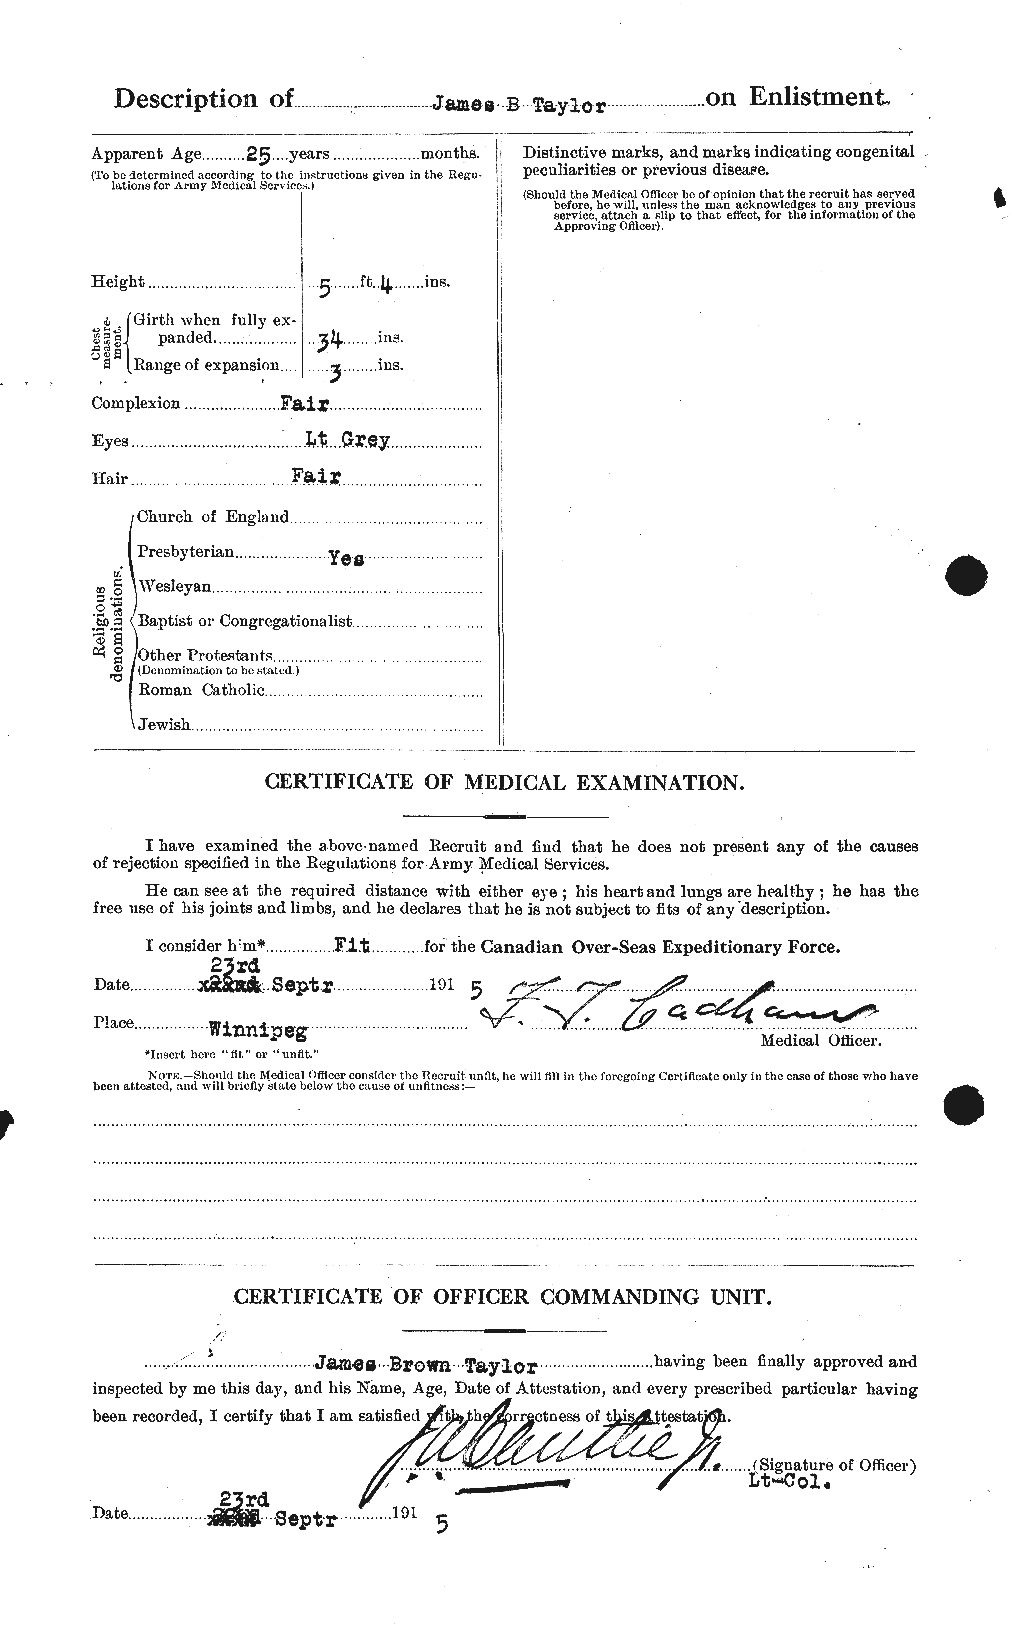 Dossiers du Personnel de la Première Guerre mondiale - CEC 626908b